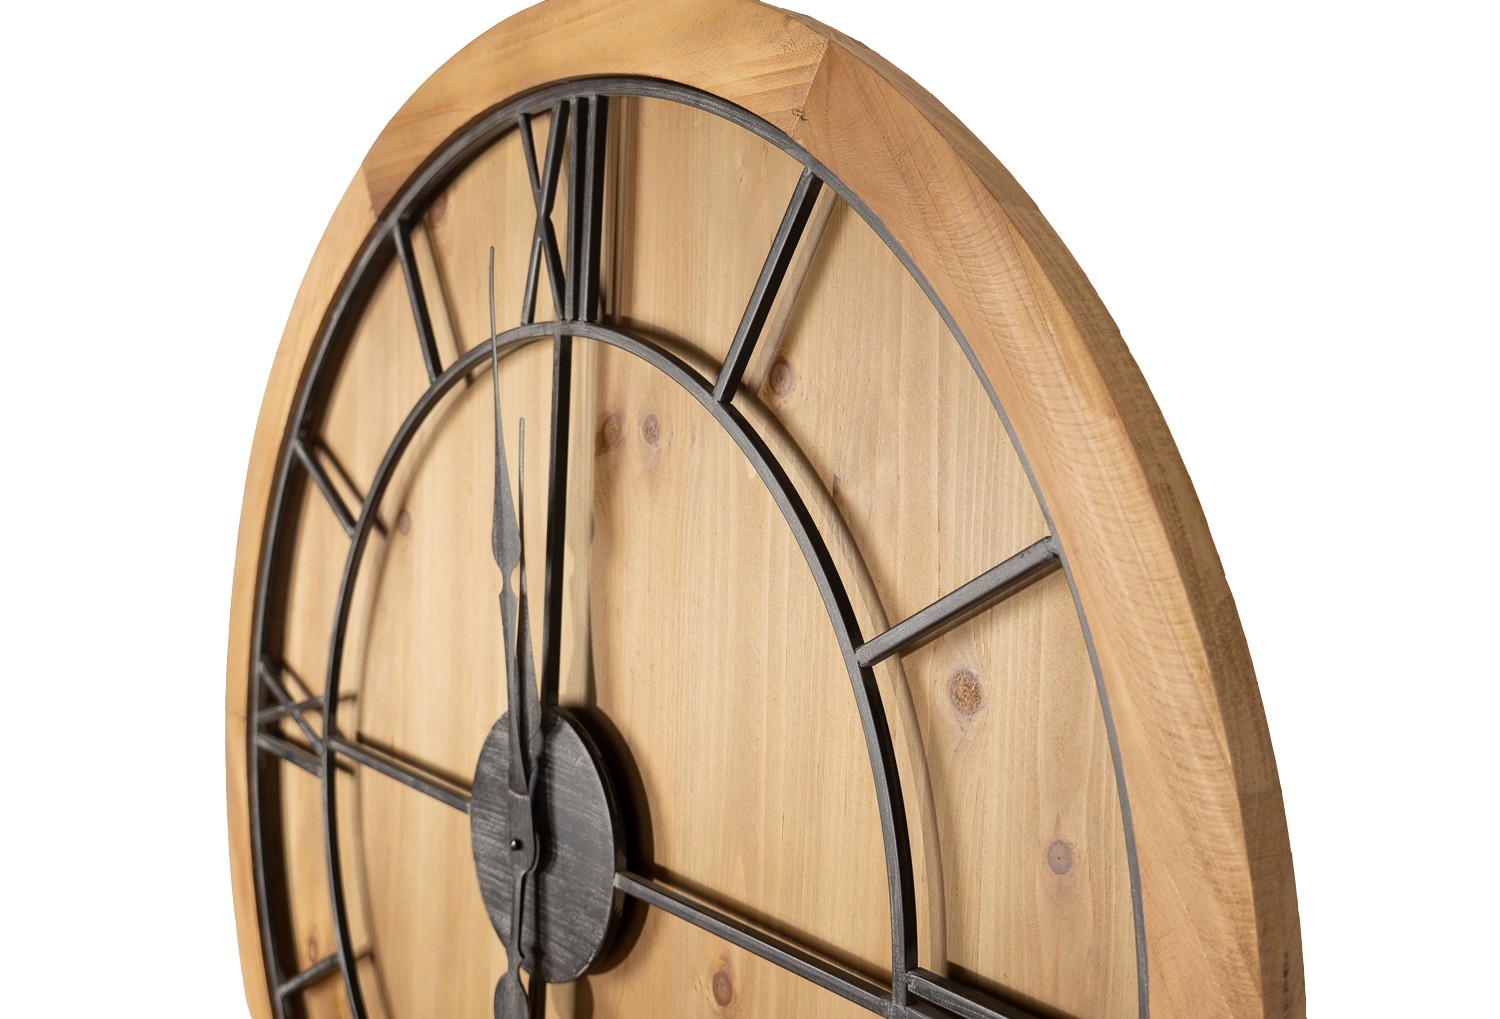 Williston Wooden Wall Clock - Image 2